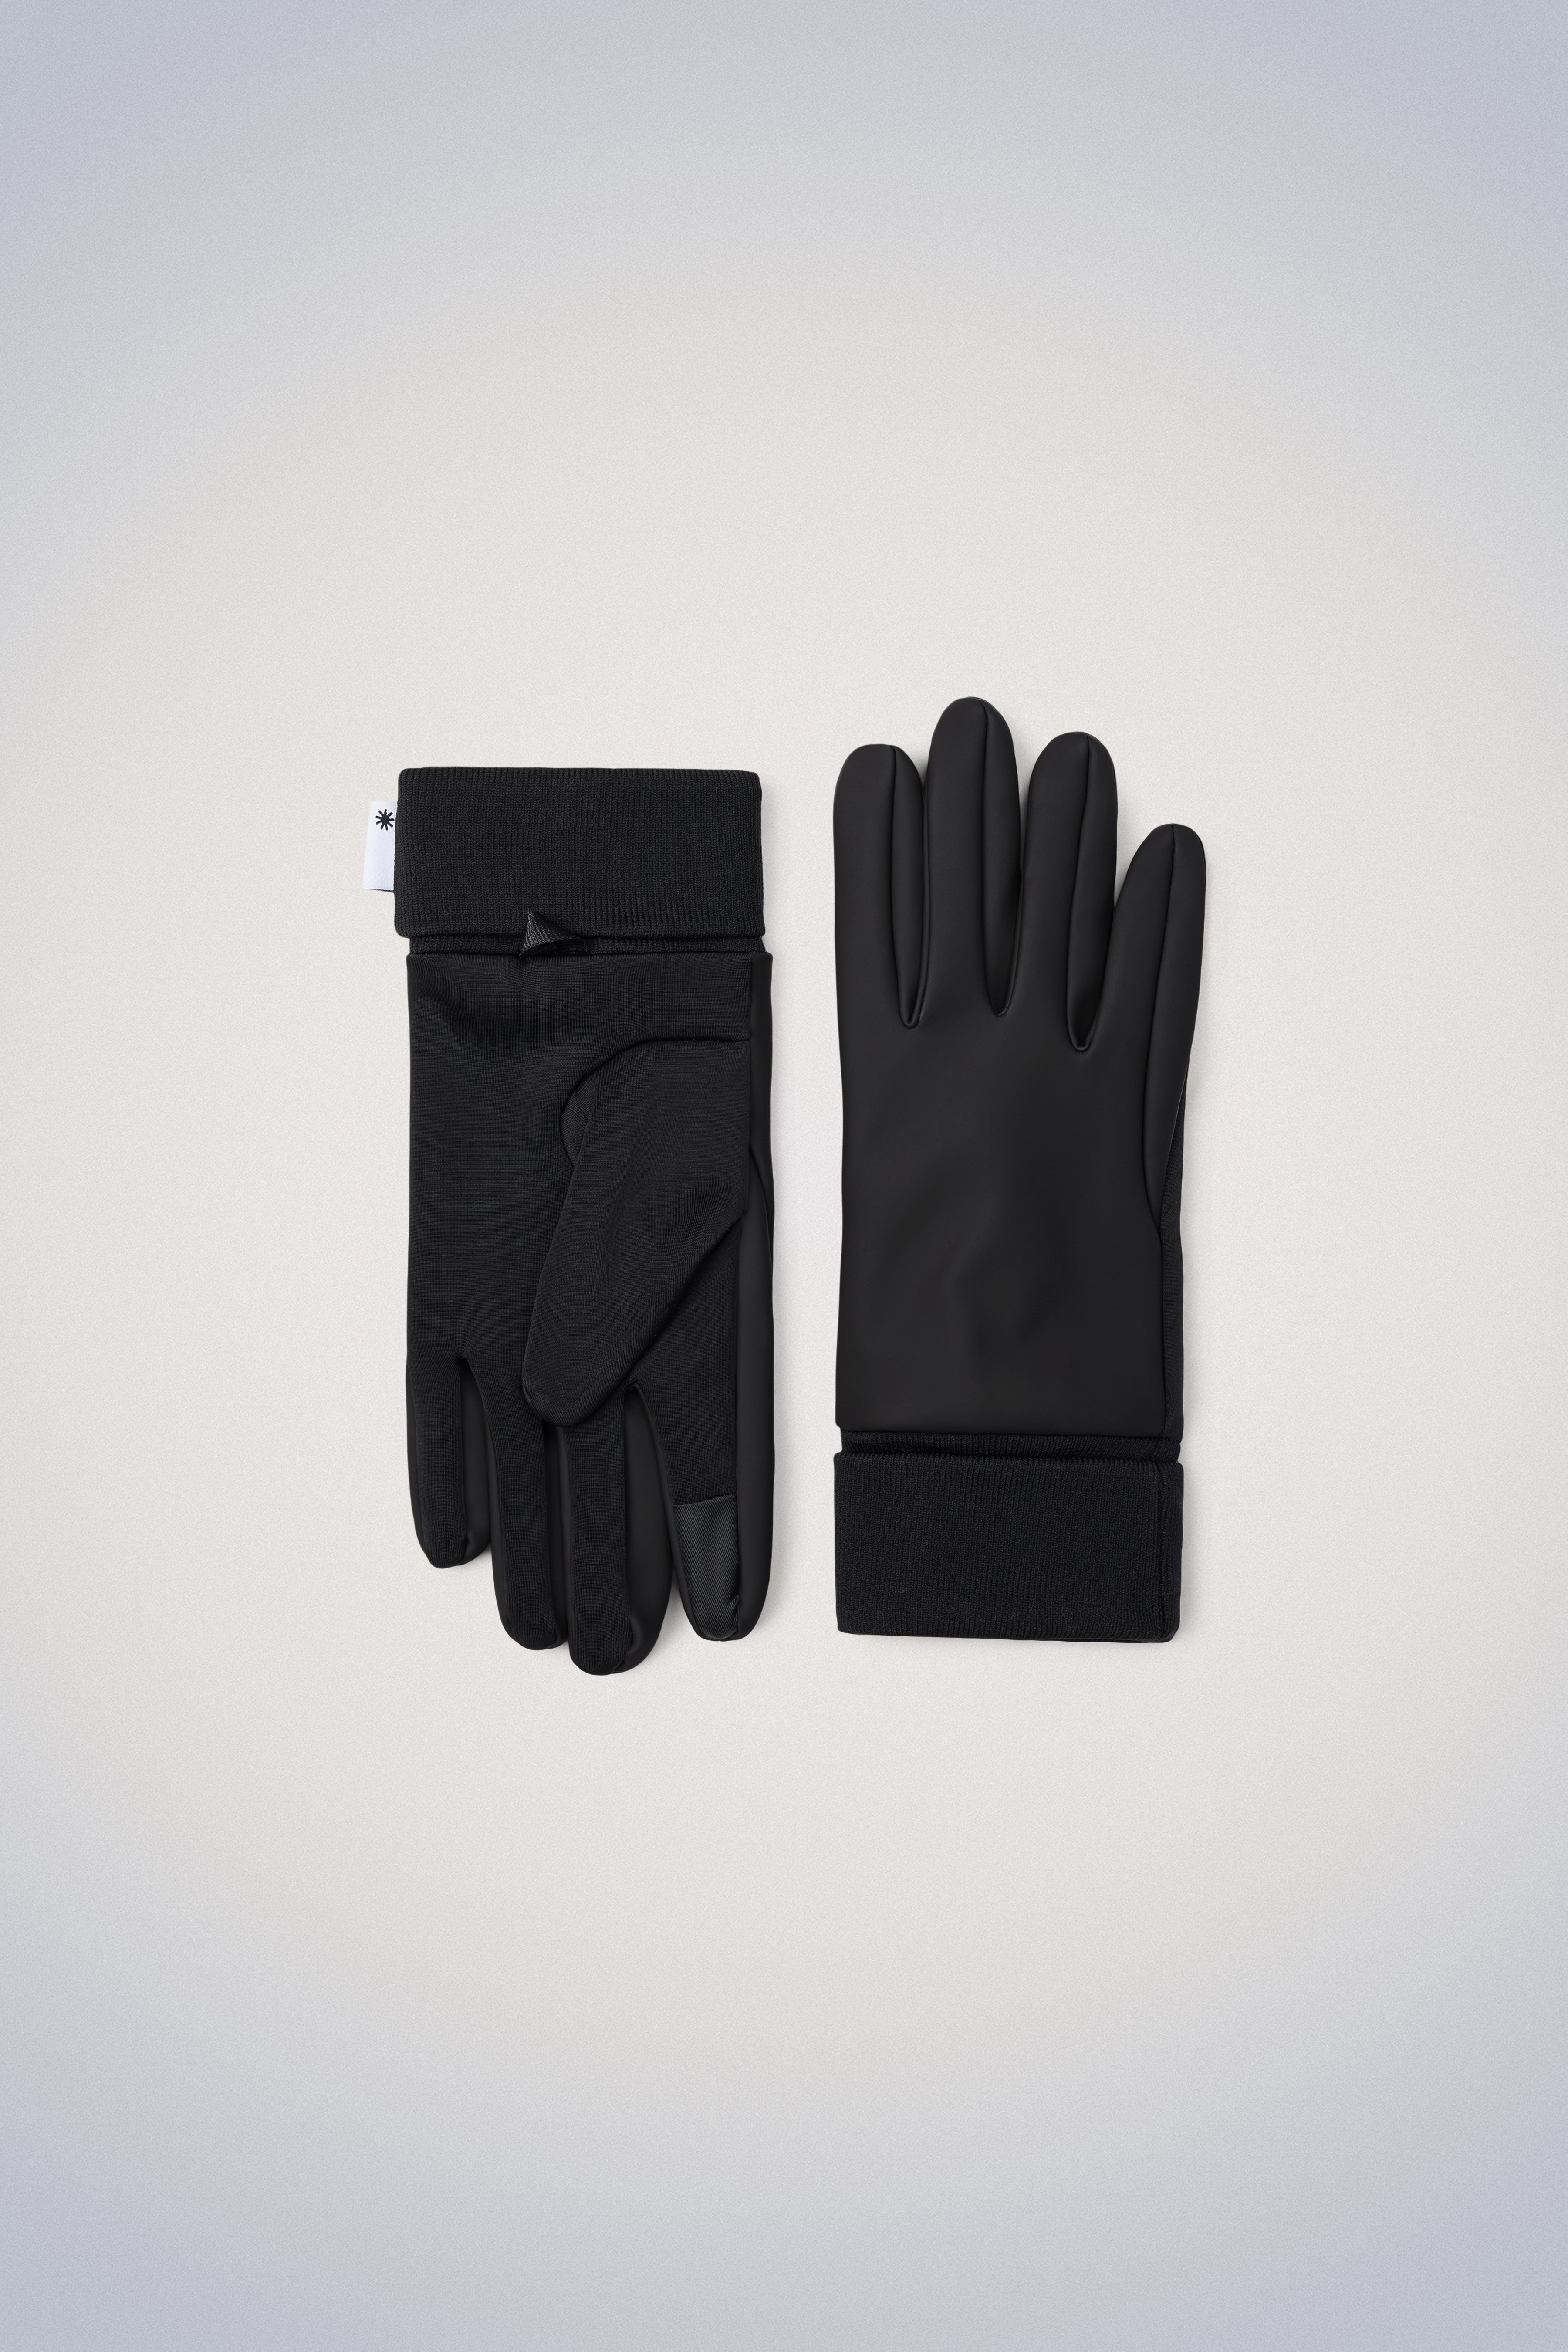 Gants thermiques tactiles - Acheter Casquettes, chapeaux, gants - L'Homme  Moderne